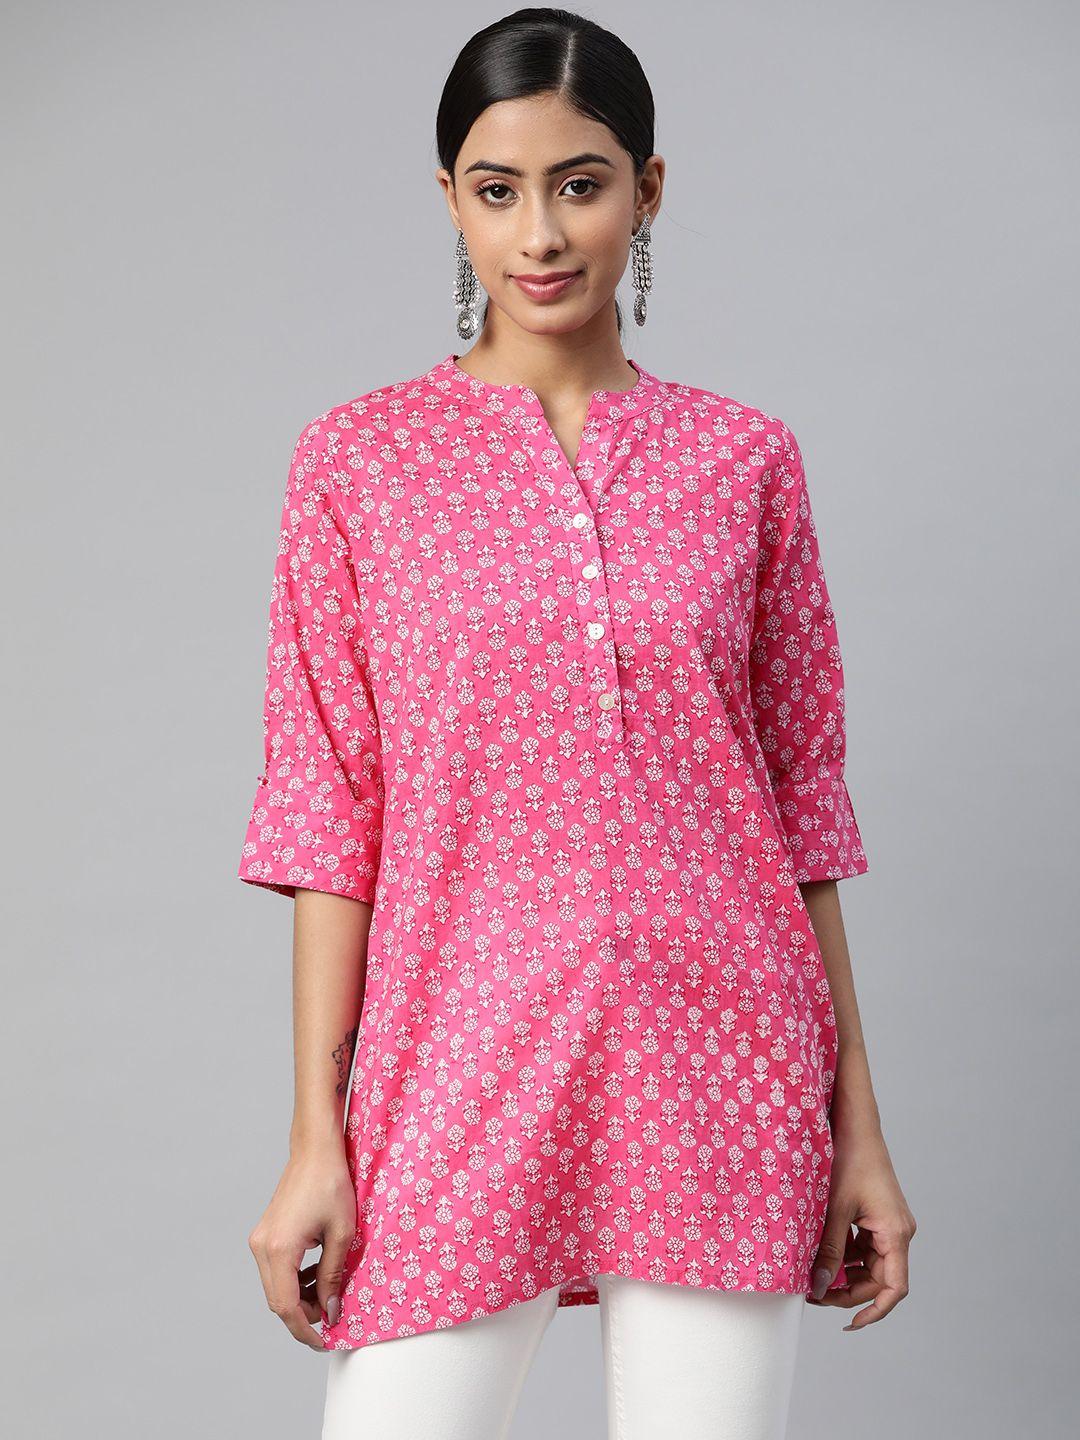 svarchi pink & white ethnic motifs printed kurti